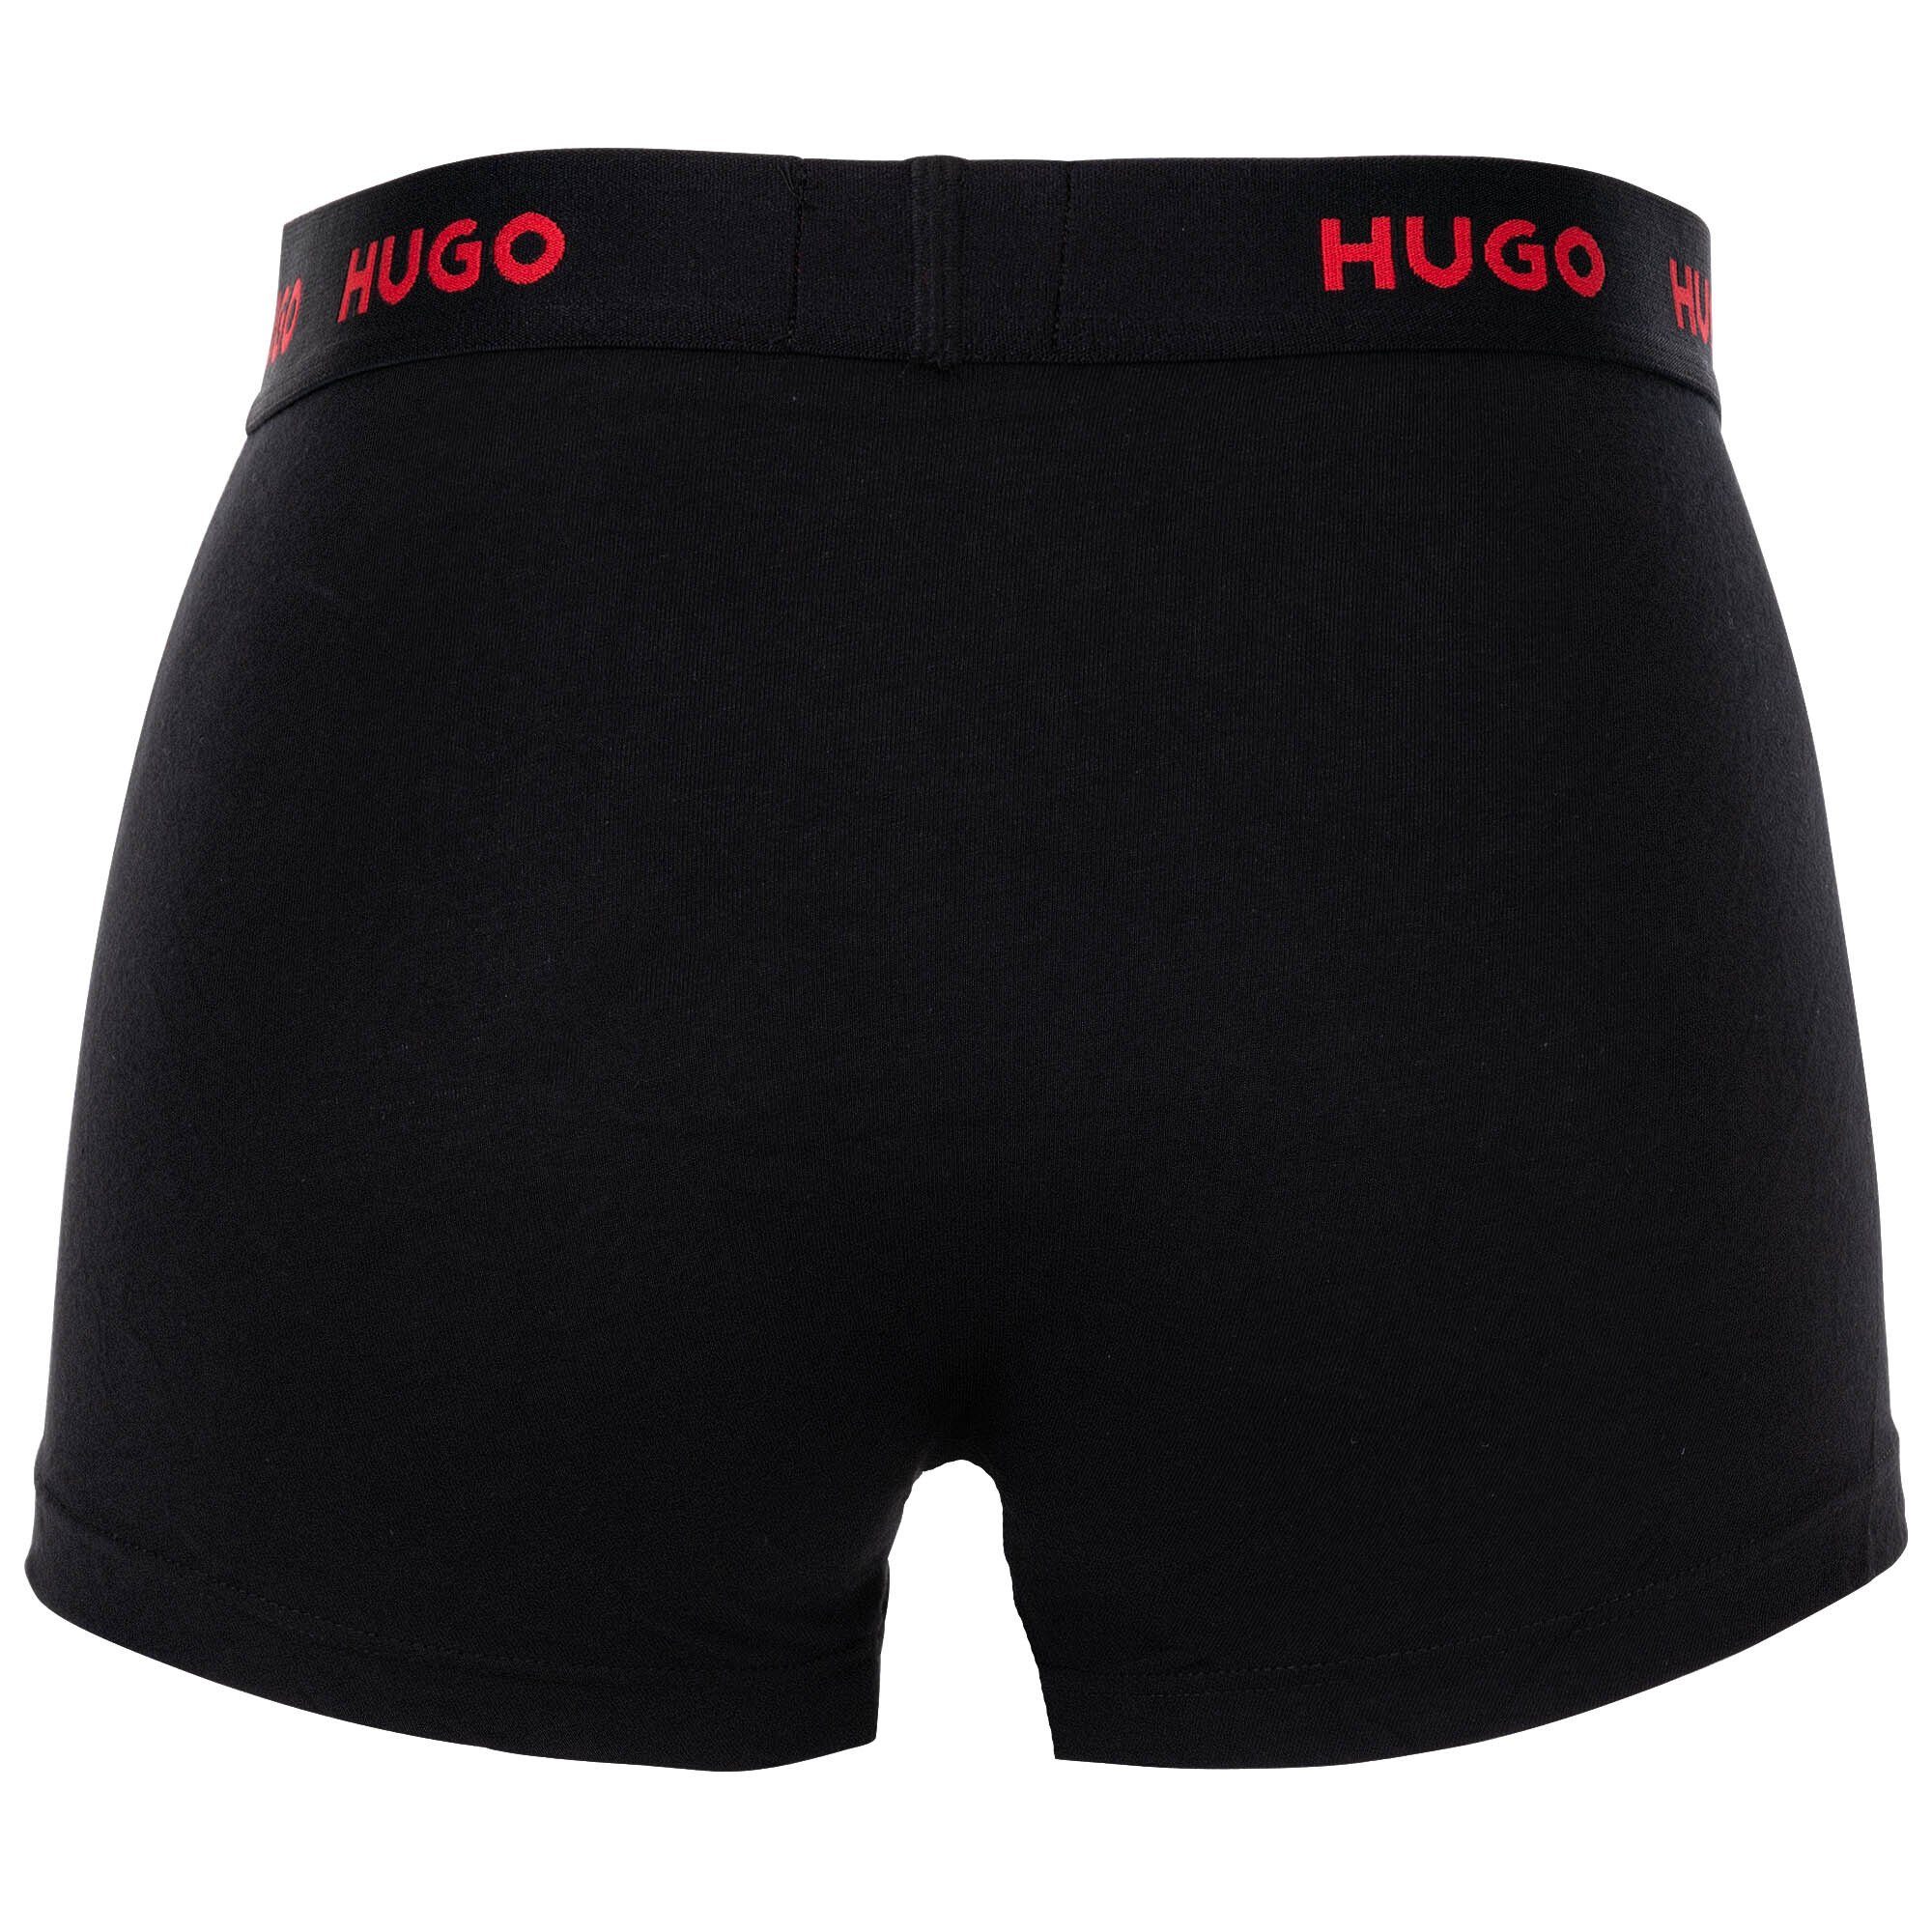 HUGO Boxer Herren Boxer Trunks Shorts, Triplet 3er Rot/Weiß/Schwarz - Pack